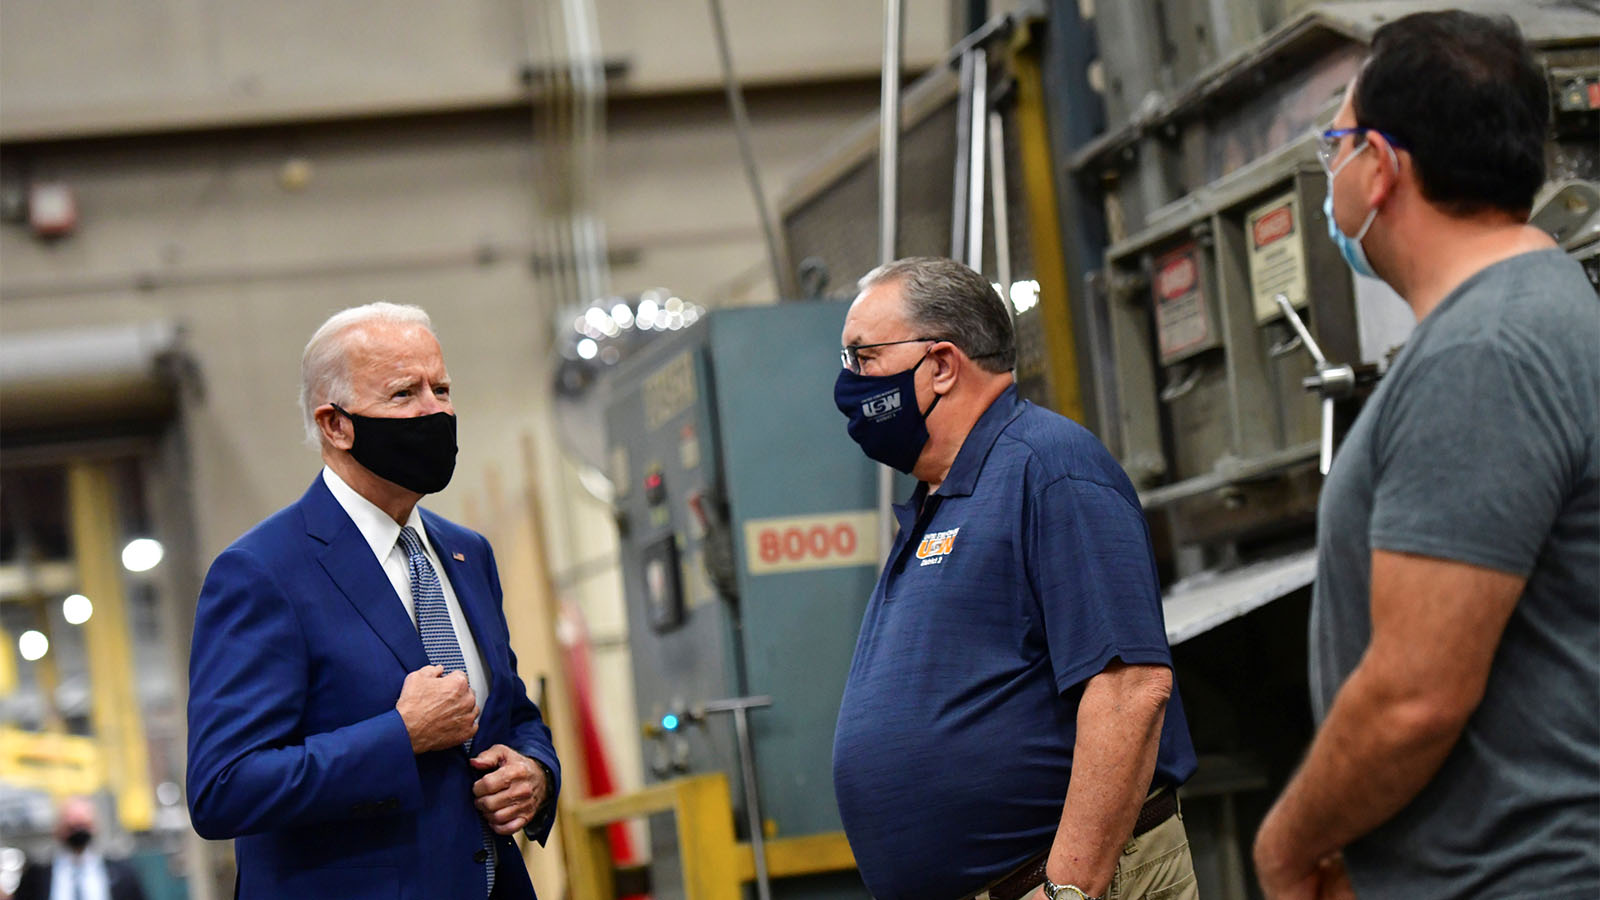 נשיא ארצות הברית ג'ו ביידן מדבר עם עובדי מפעל בארצות הברית. &quot;גו' ביידן הוא חלק מהמשפחה שלנו. אנשי האיגודים&quot; (צילום: REUTERS/Mark Makela)